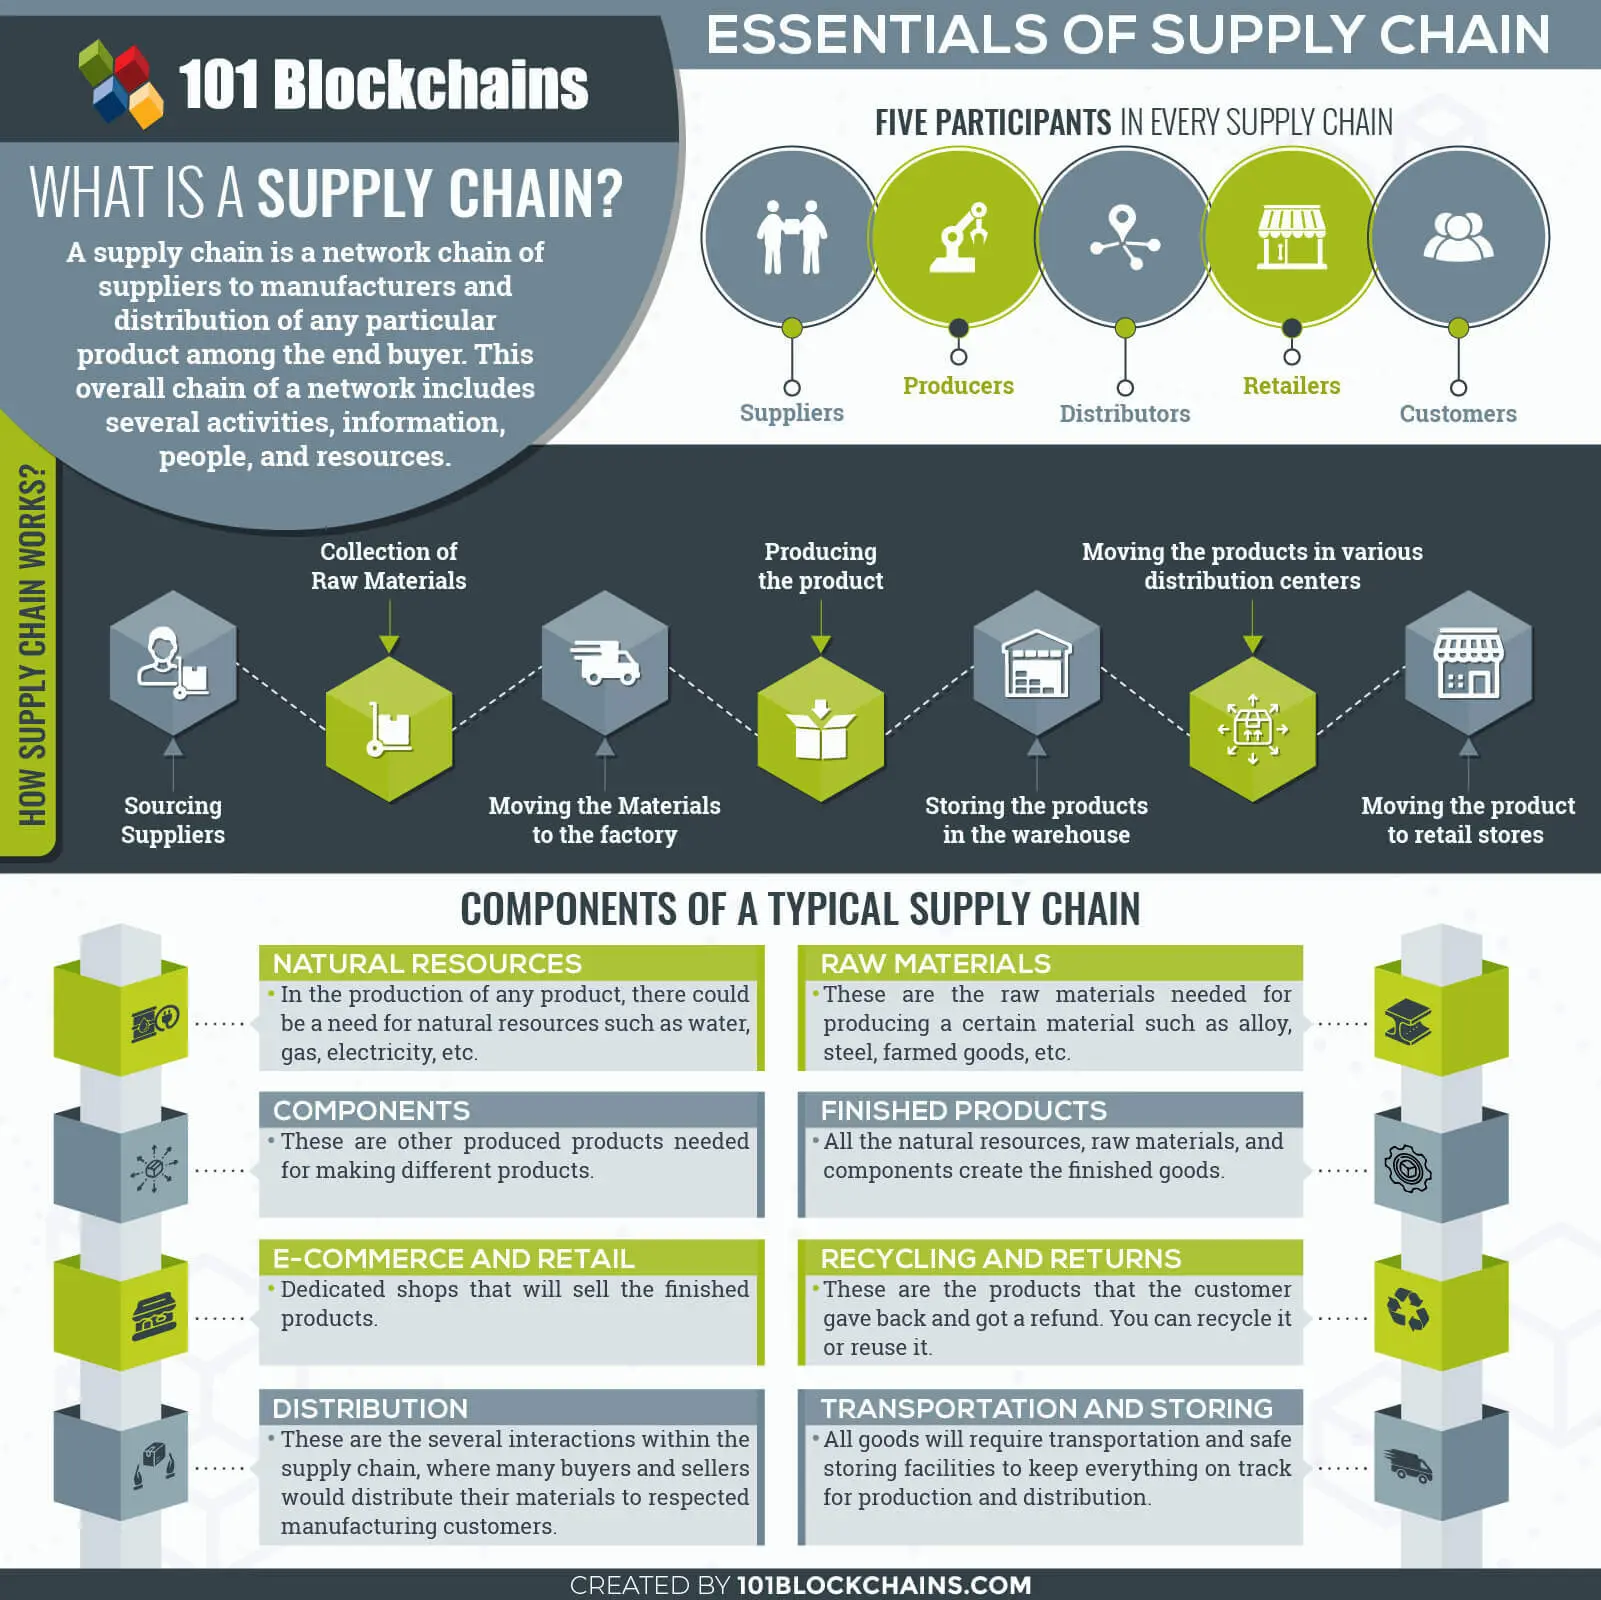 Essentials of Supply Chain